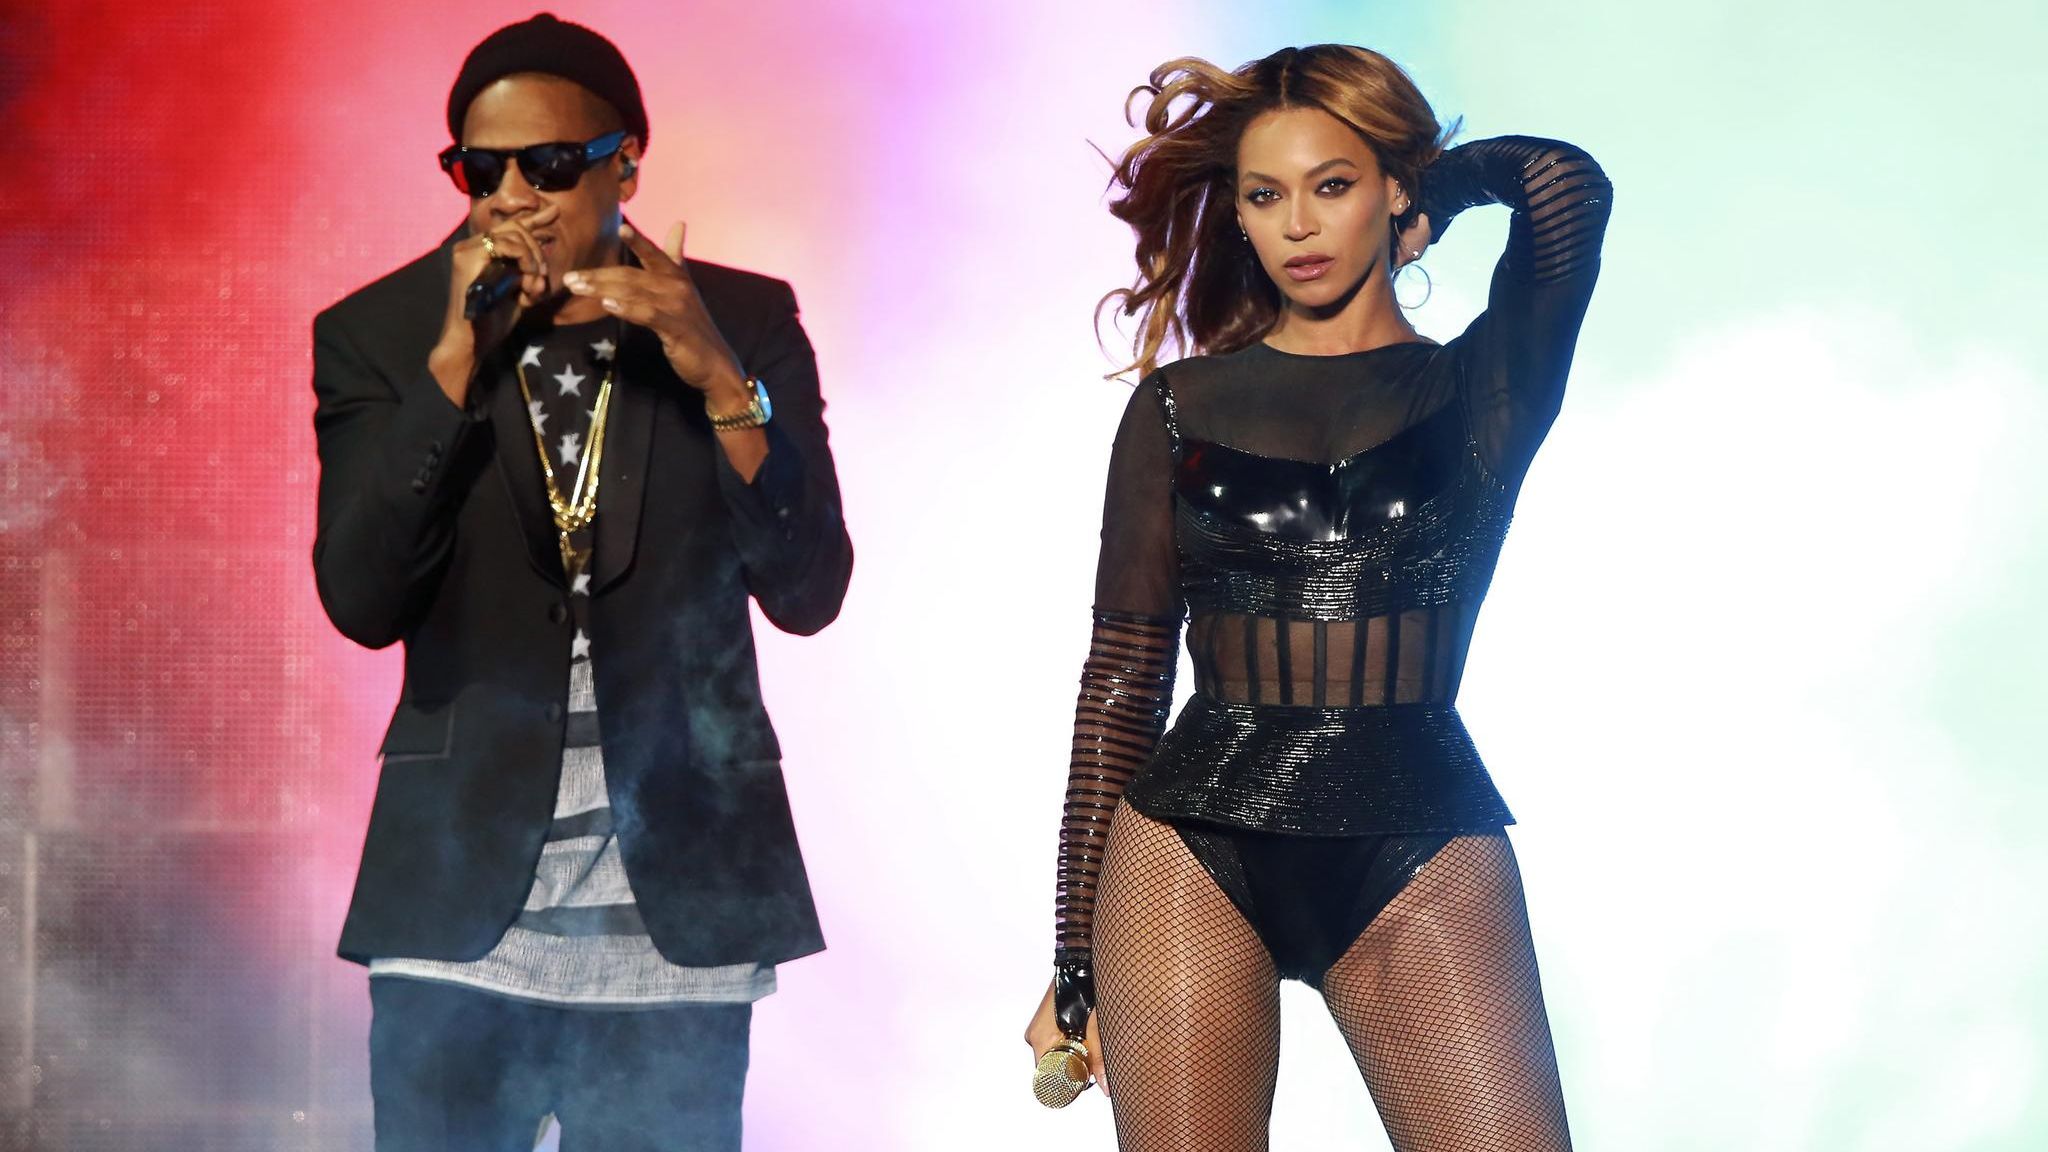 Schrecksekunde für Beyoncé und Jay-Z bei Konzert in Atlanta